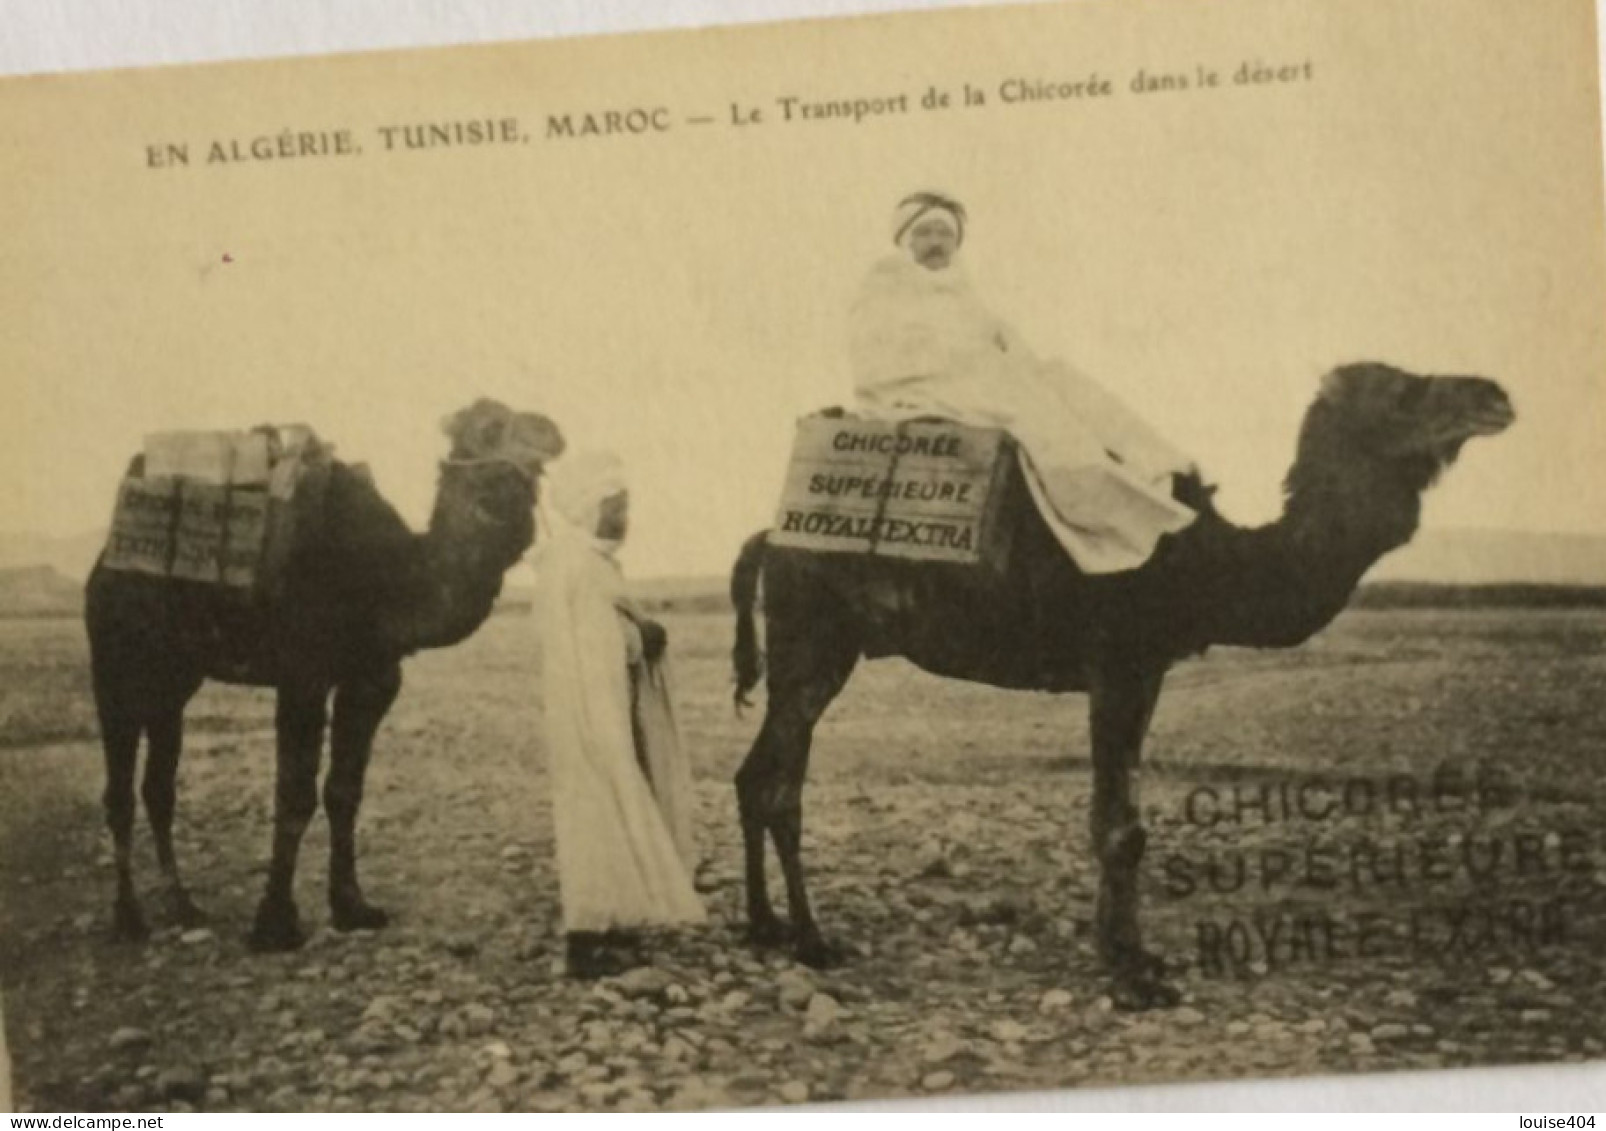 EE ALGERIE MAROC  TUNISIE TRANSPORT DE LA CHICOREE DANS LE DESERT - Professions